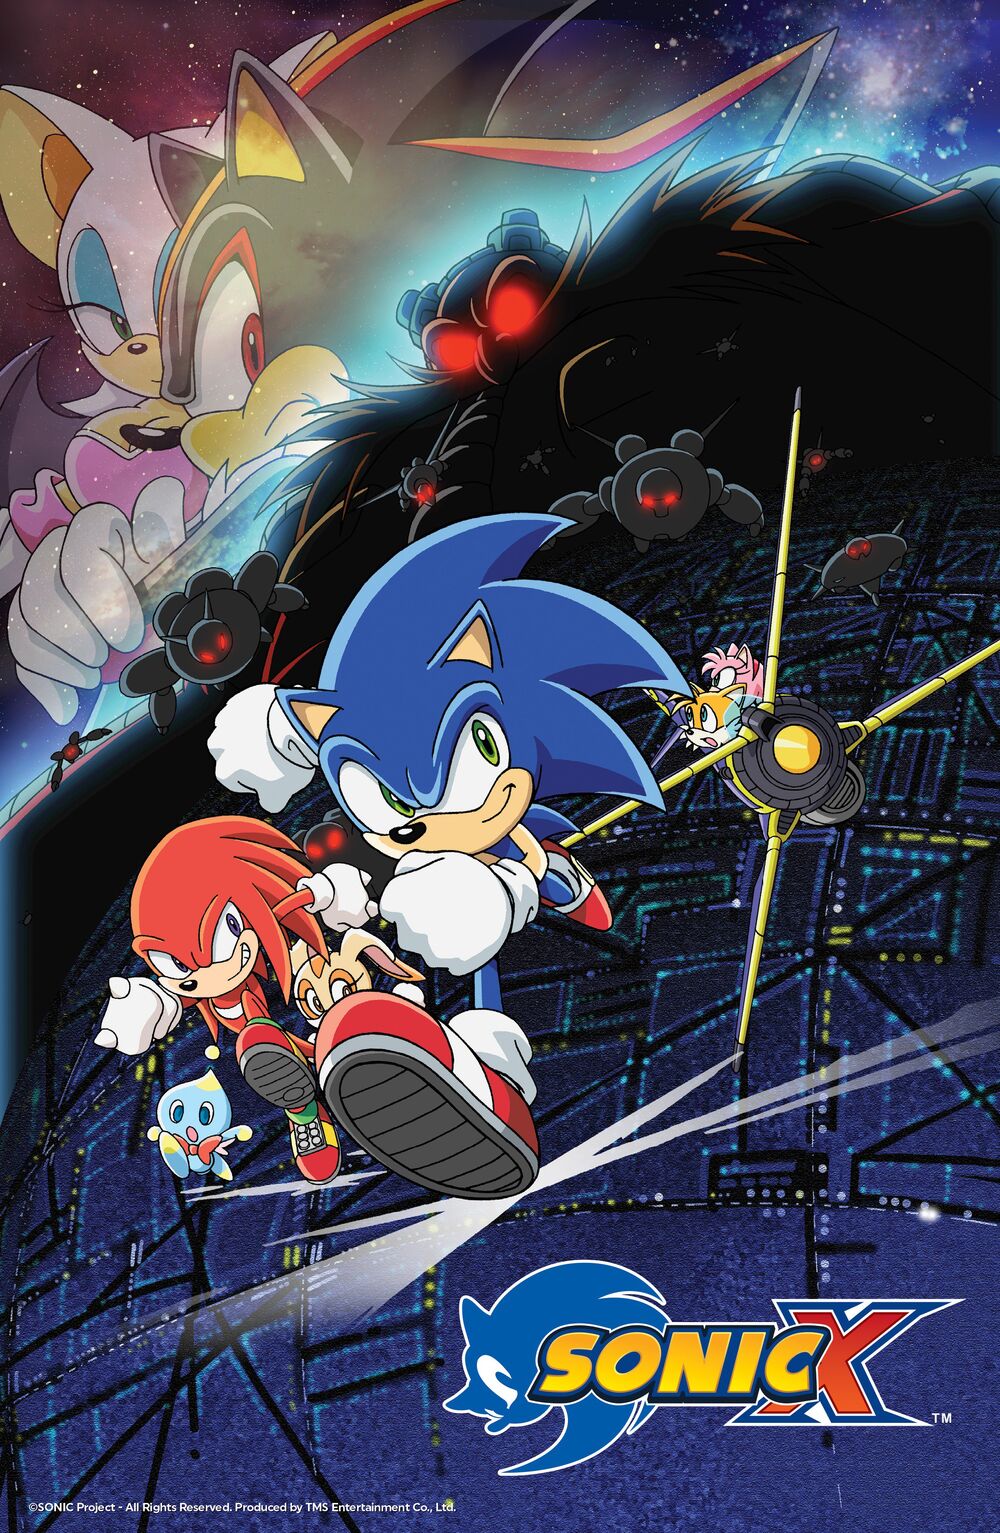 Vs Sonic-EXE Round 2 (FV) Pack